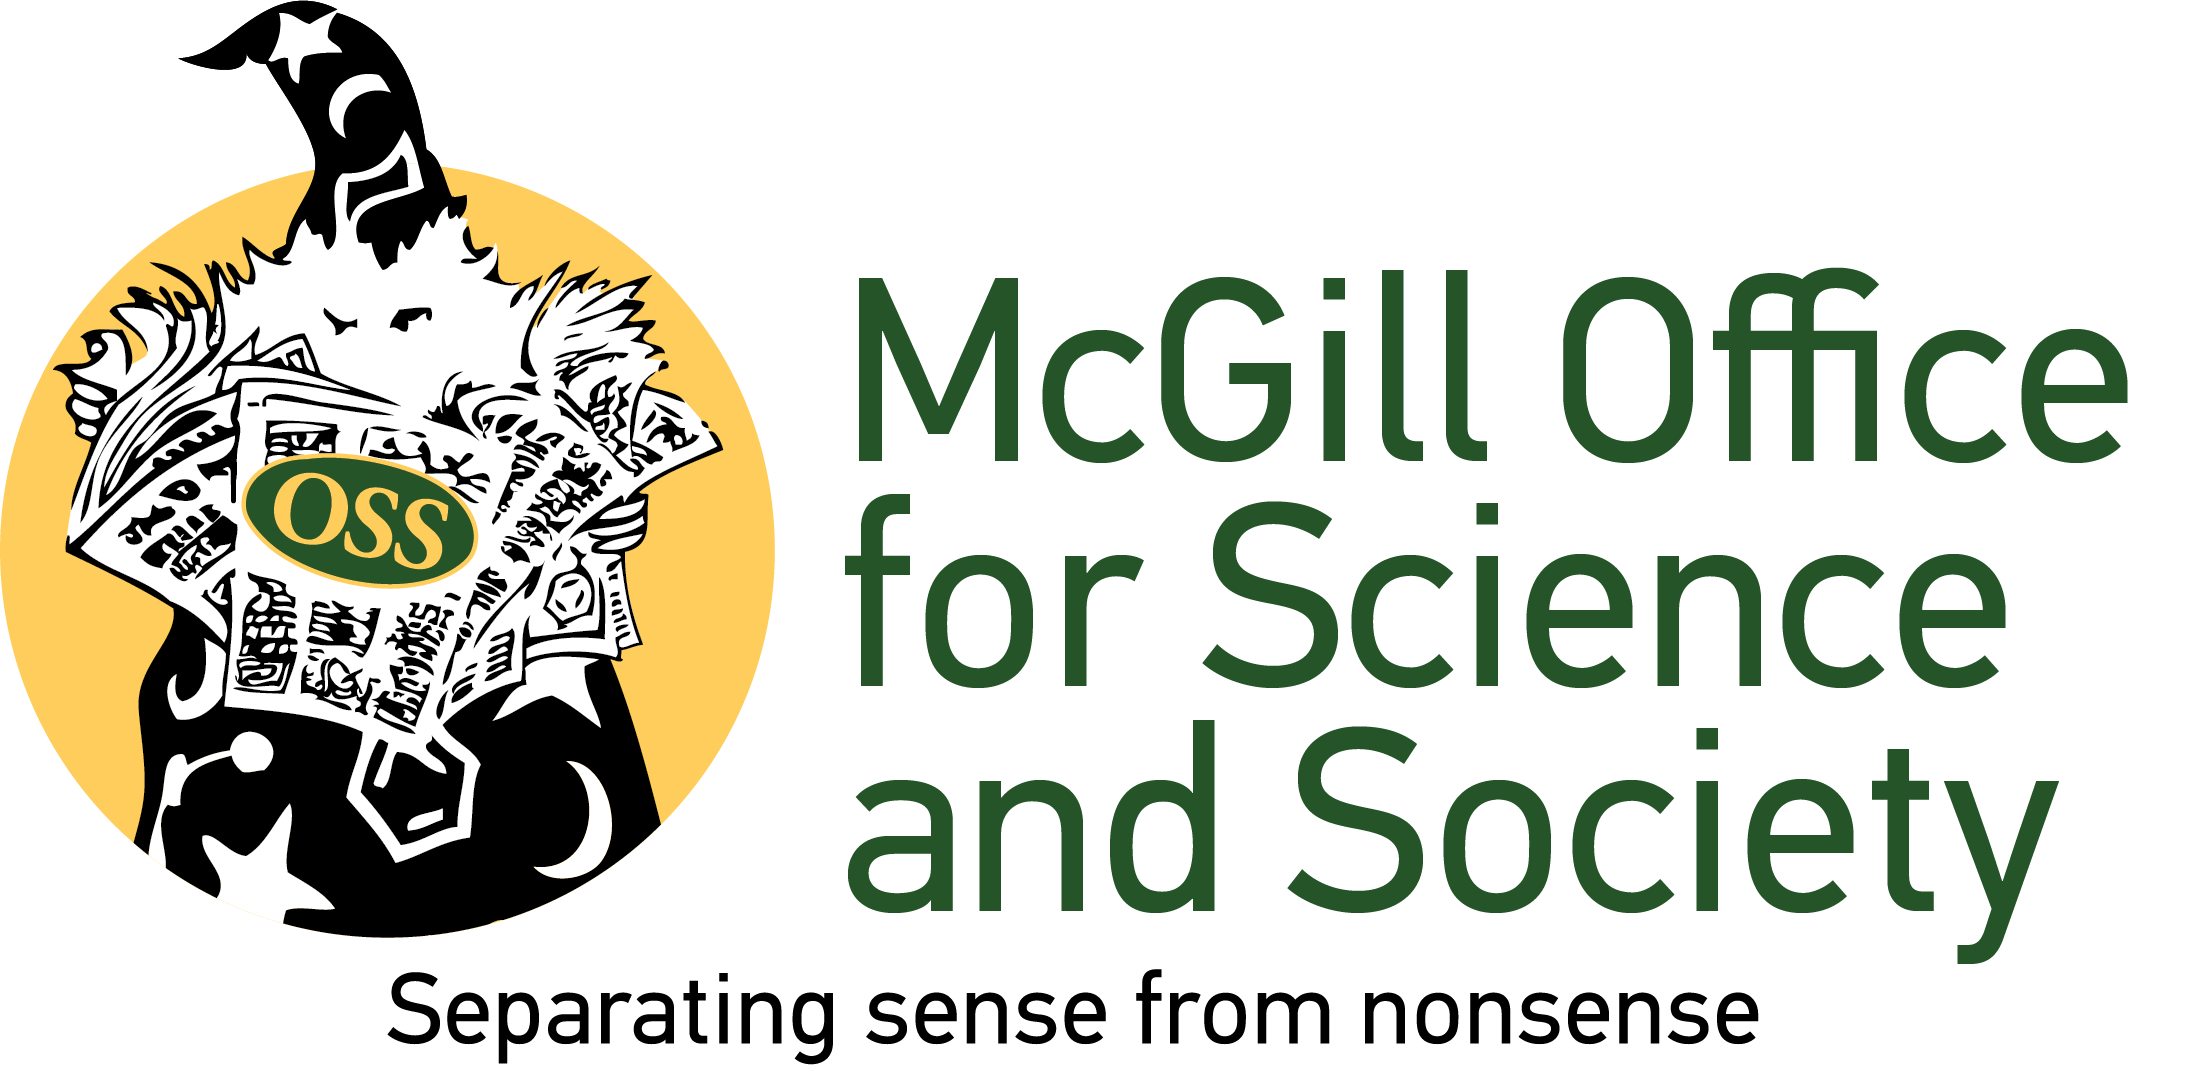 McGill OSS logo